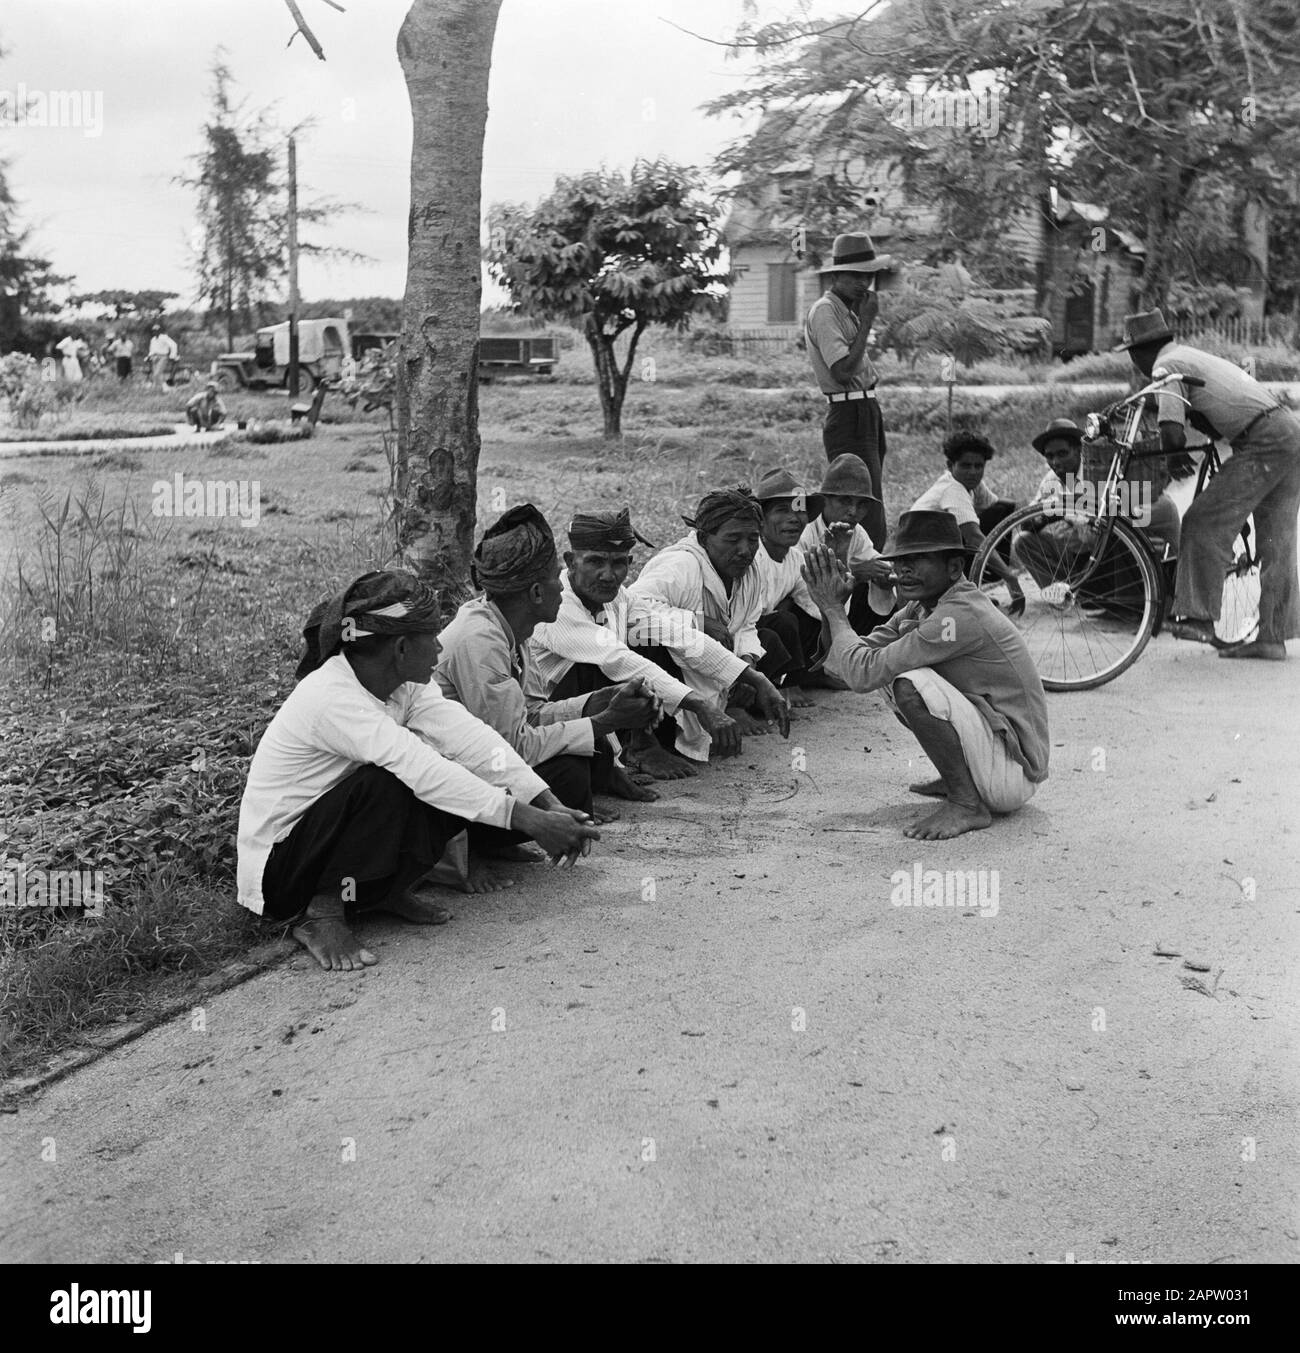 Reise nach Suriname und zu den niederländischen Antillen Javanische Männer in New Nickerie Datum: 1947 Ort: Nickerie, Suriname Schlüsselwörter: Javaner, indigene Menschen Stockfoto